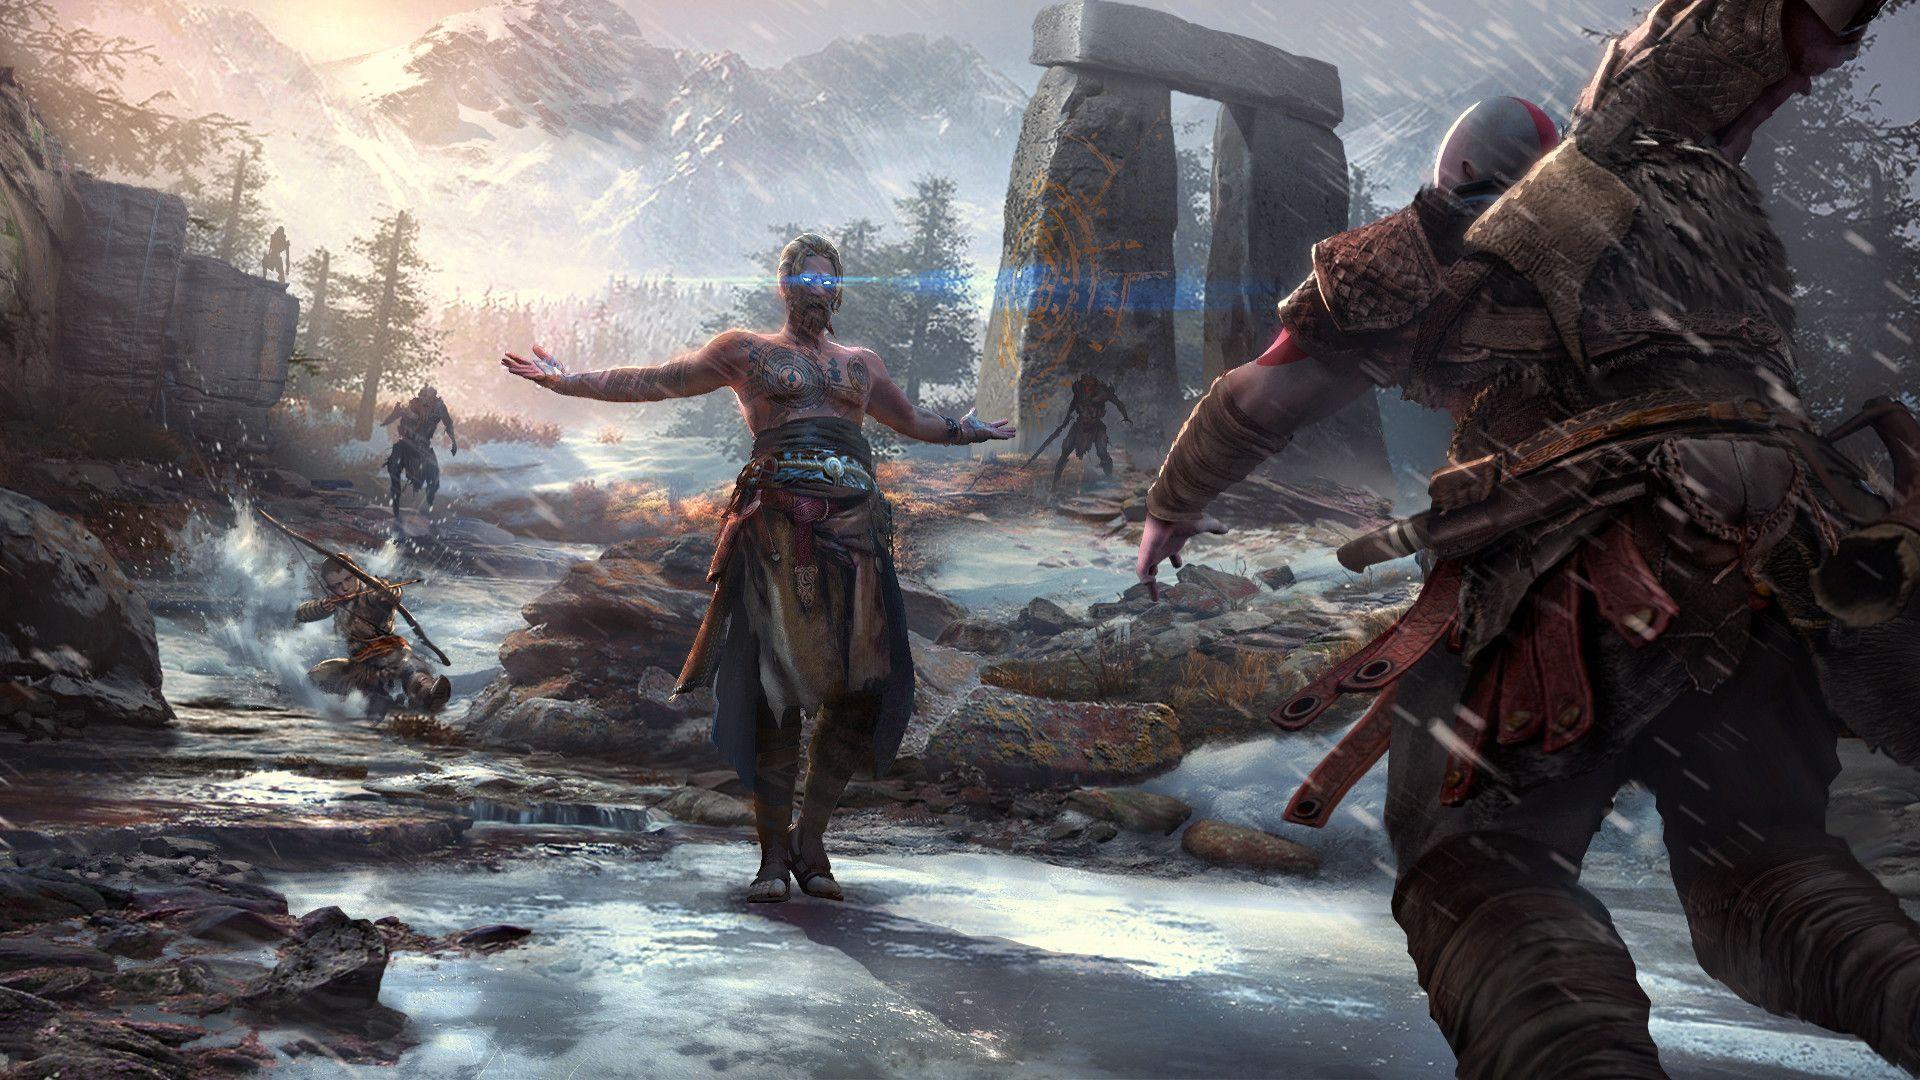 God of War Wallpaper 4K, Ultrawide, Kratos, PC Games